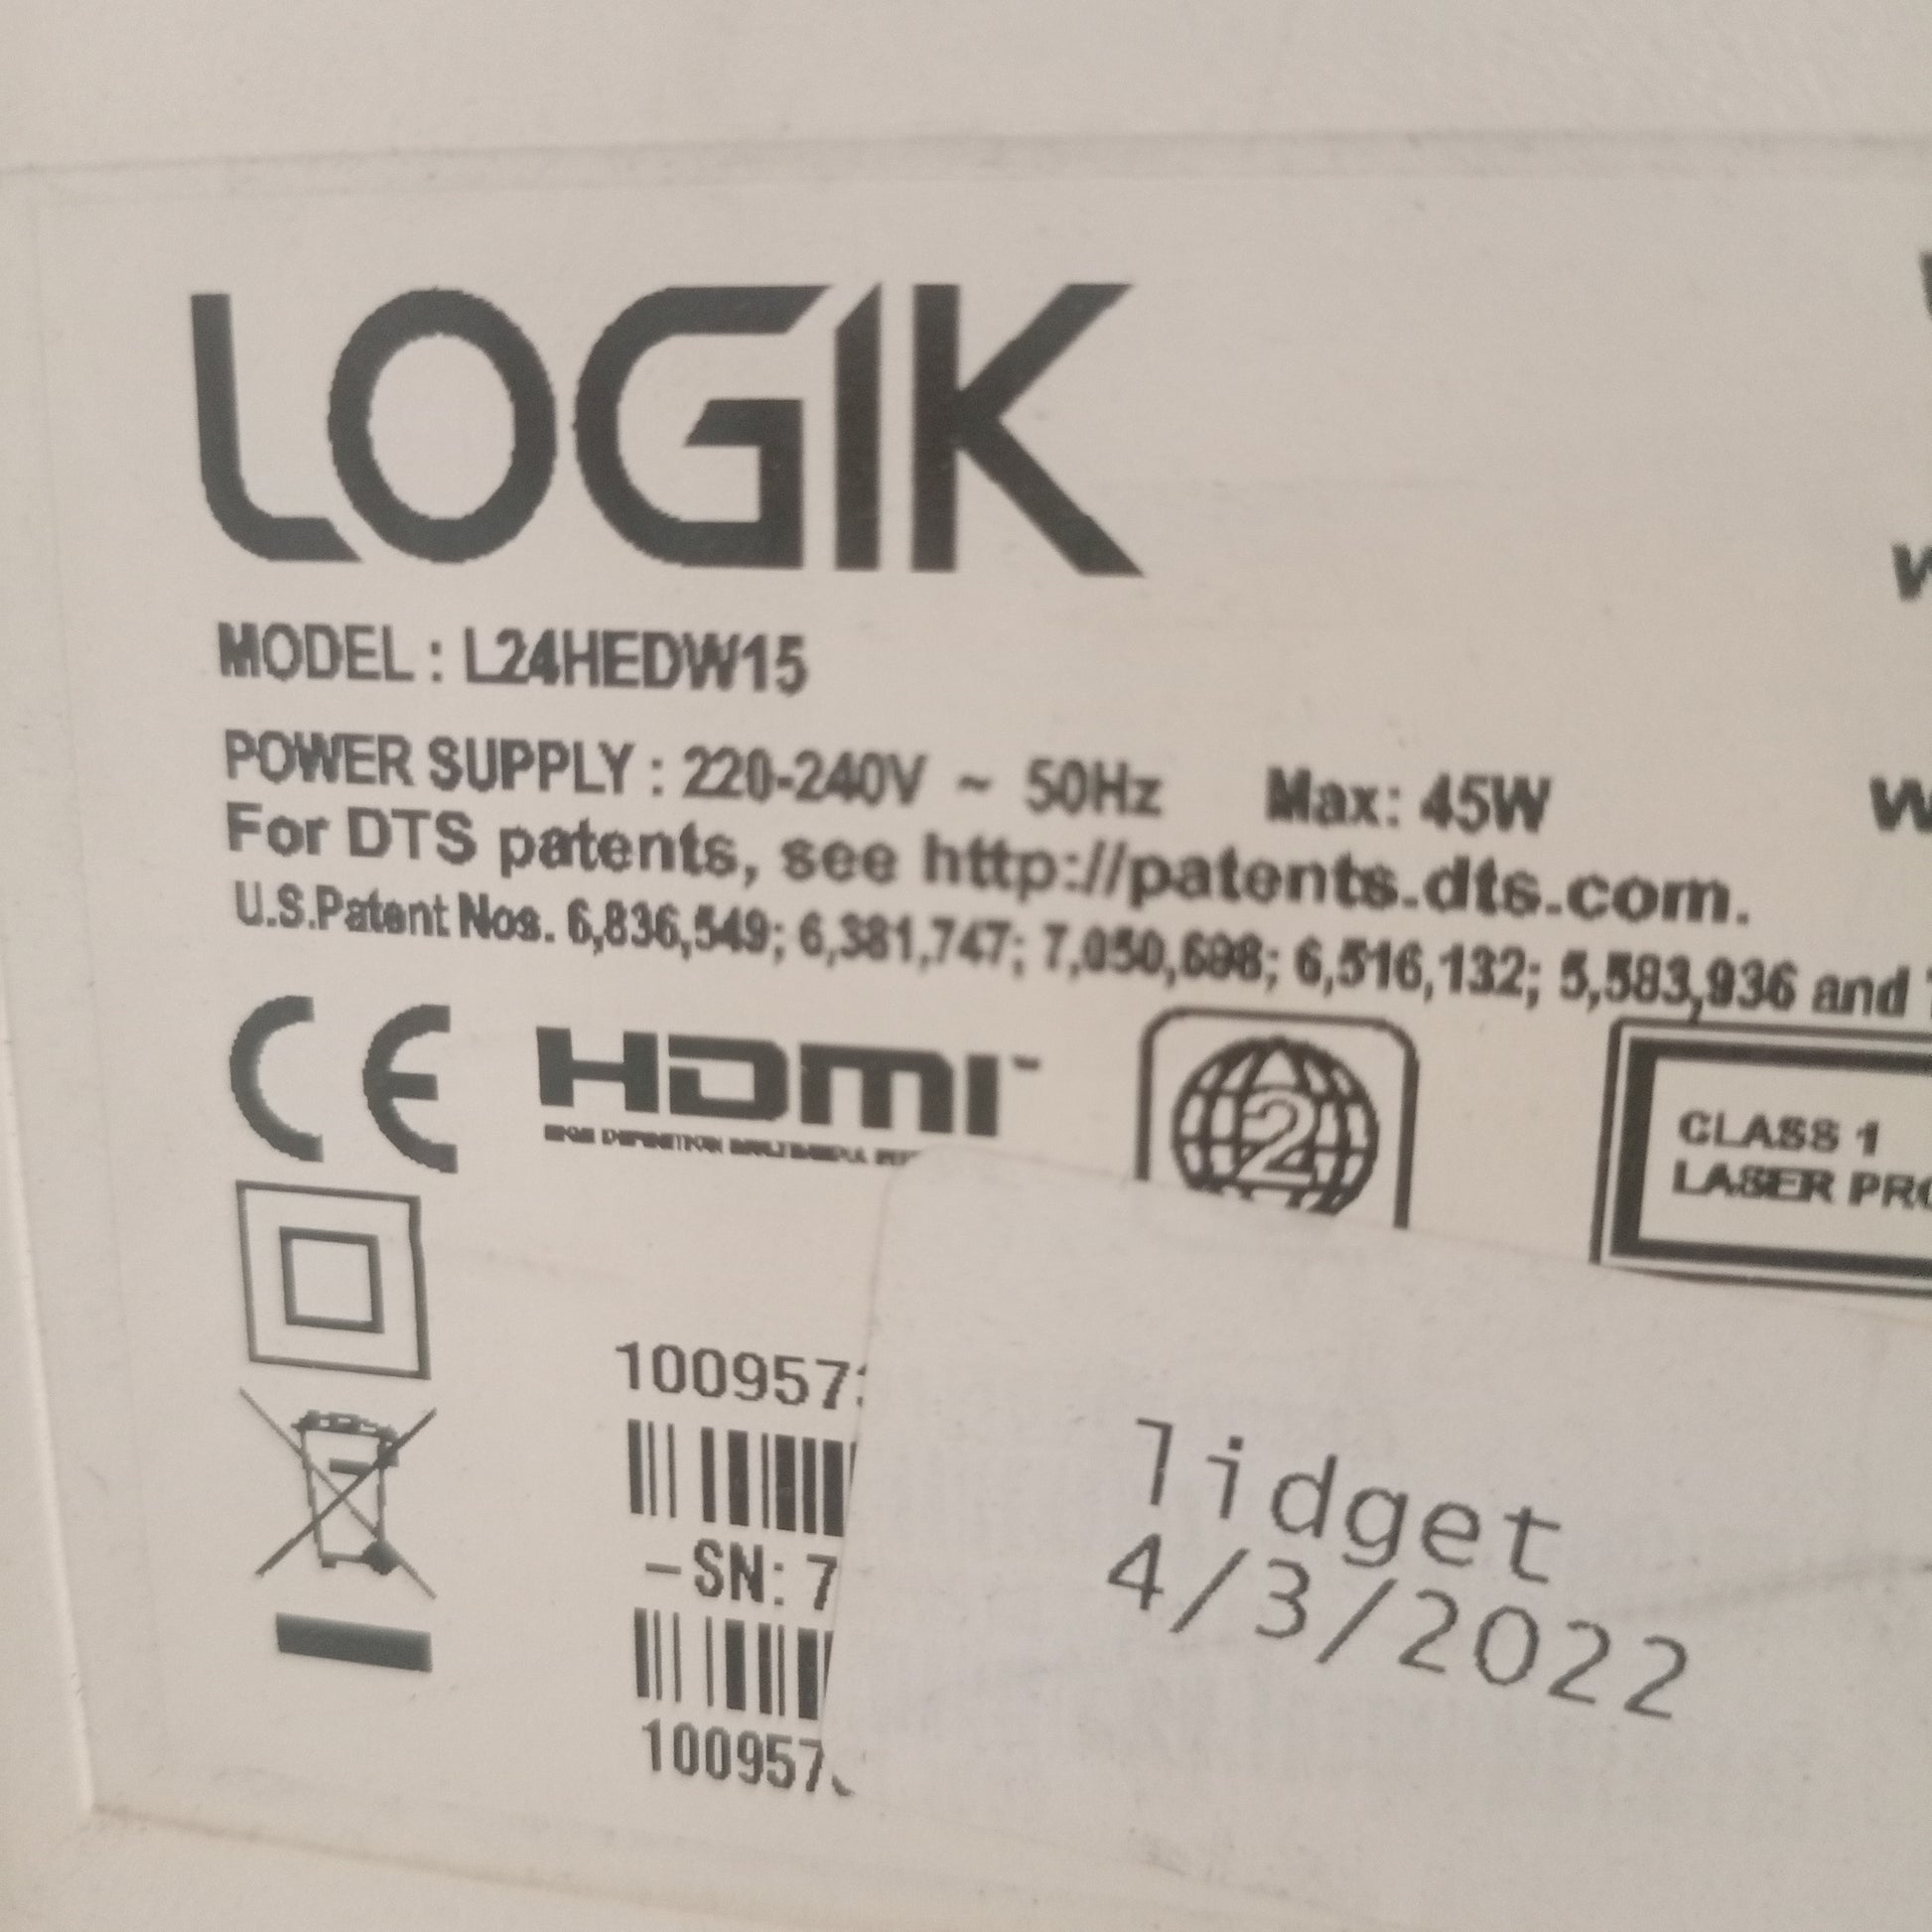 Logik 24 Inch L24HEDW15 FHD LED TV (White) - Model number sticker